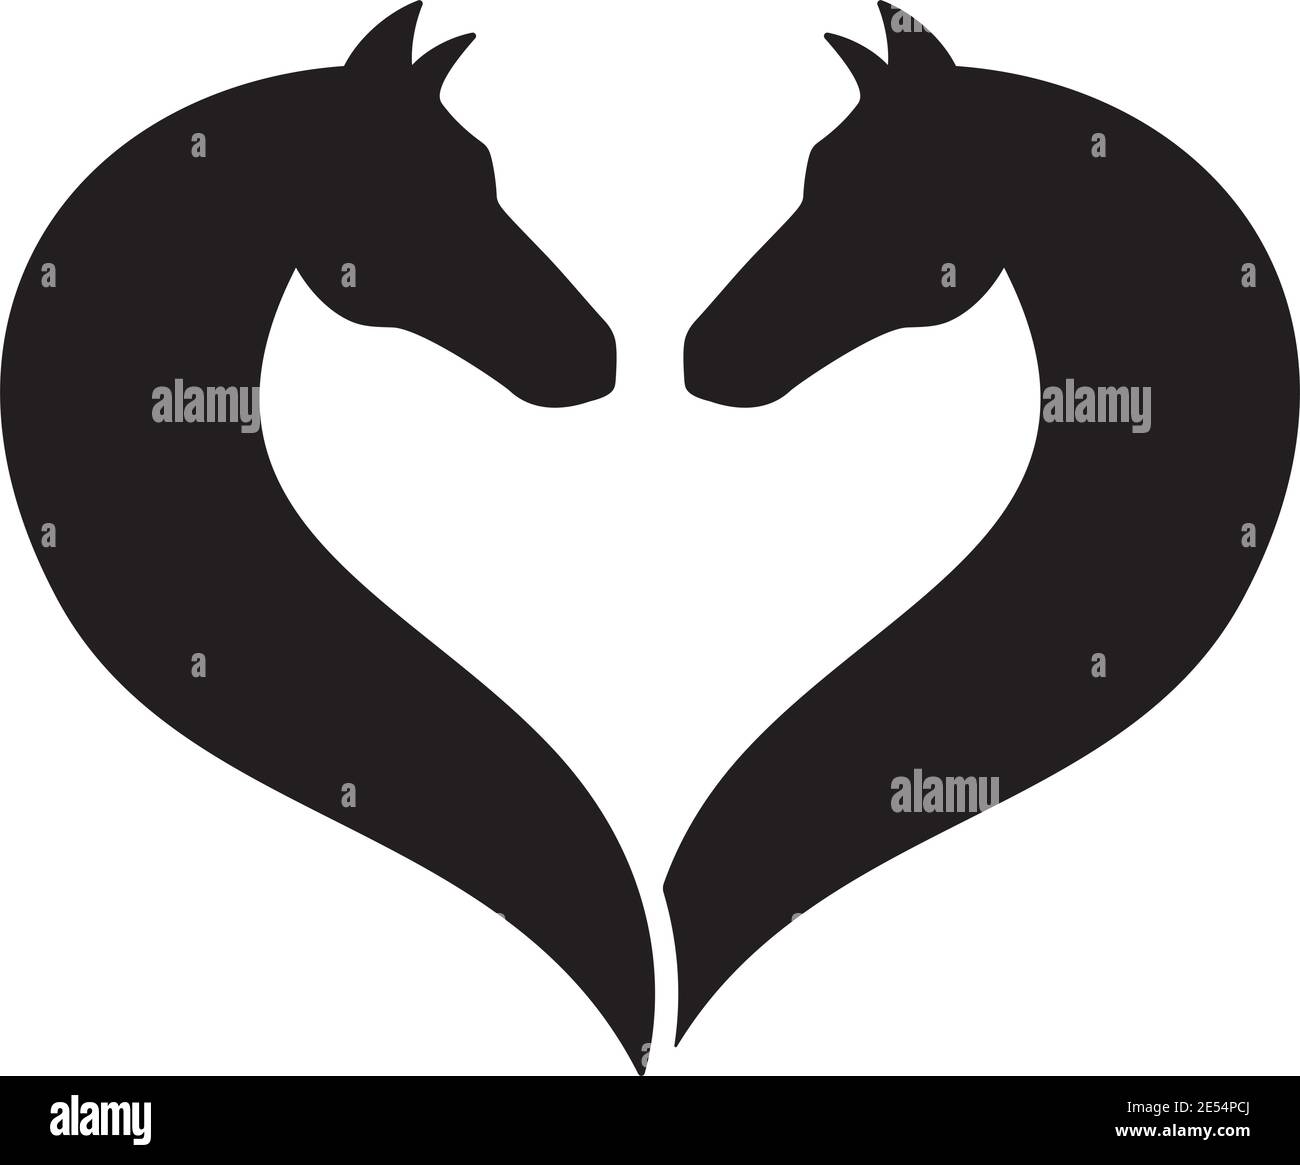 Deux silhouettes de tête de cheval se faisant face l'une à l'autre, formant une illustration de vecteur de forme de coeur Illustration de Vecteur